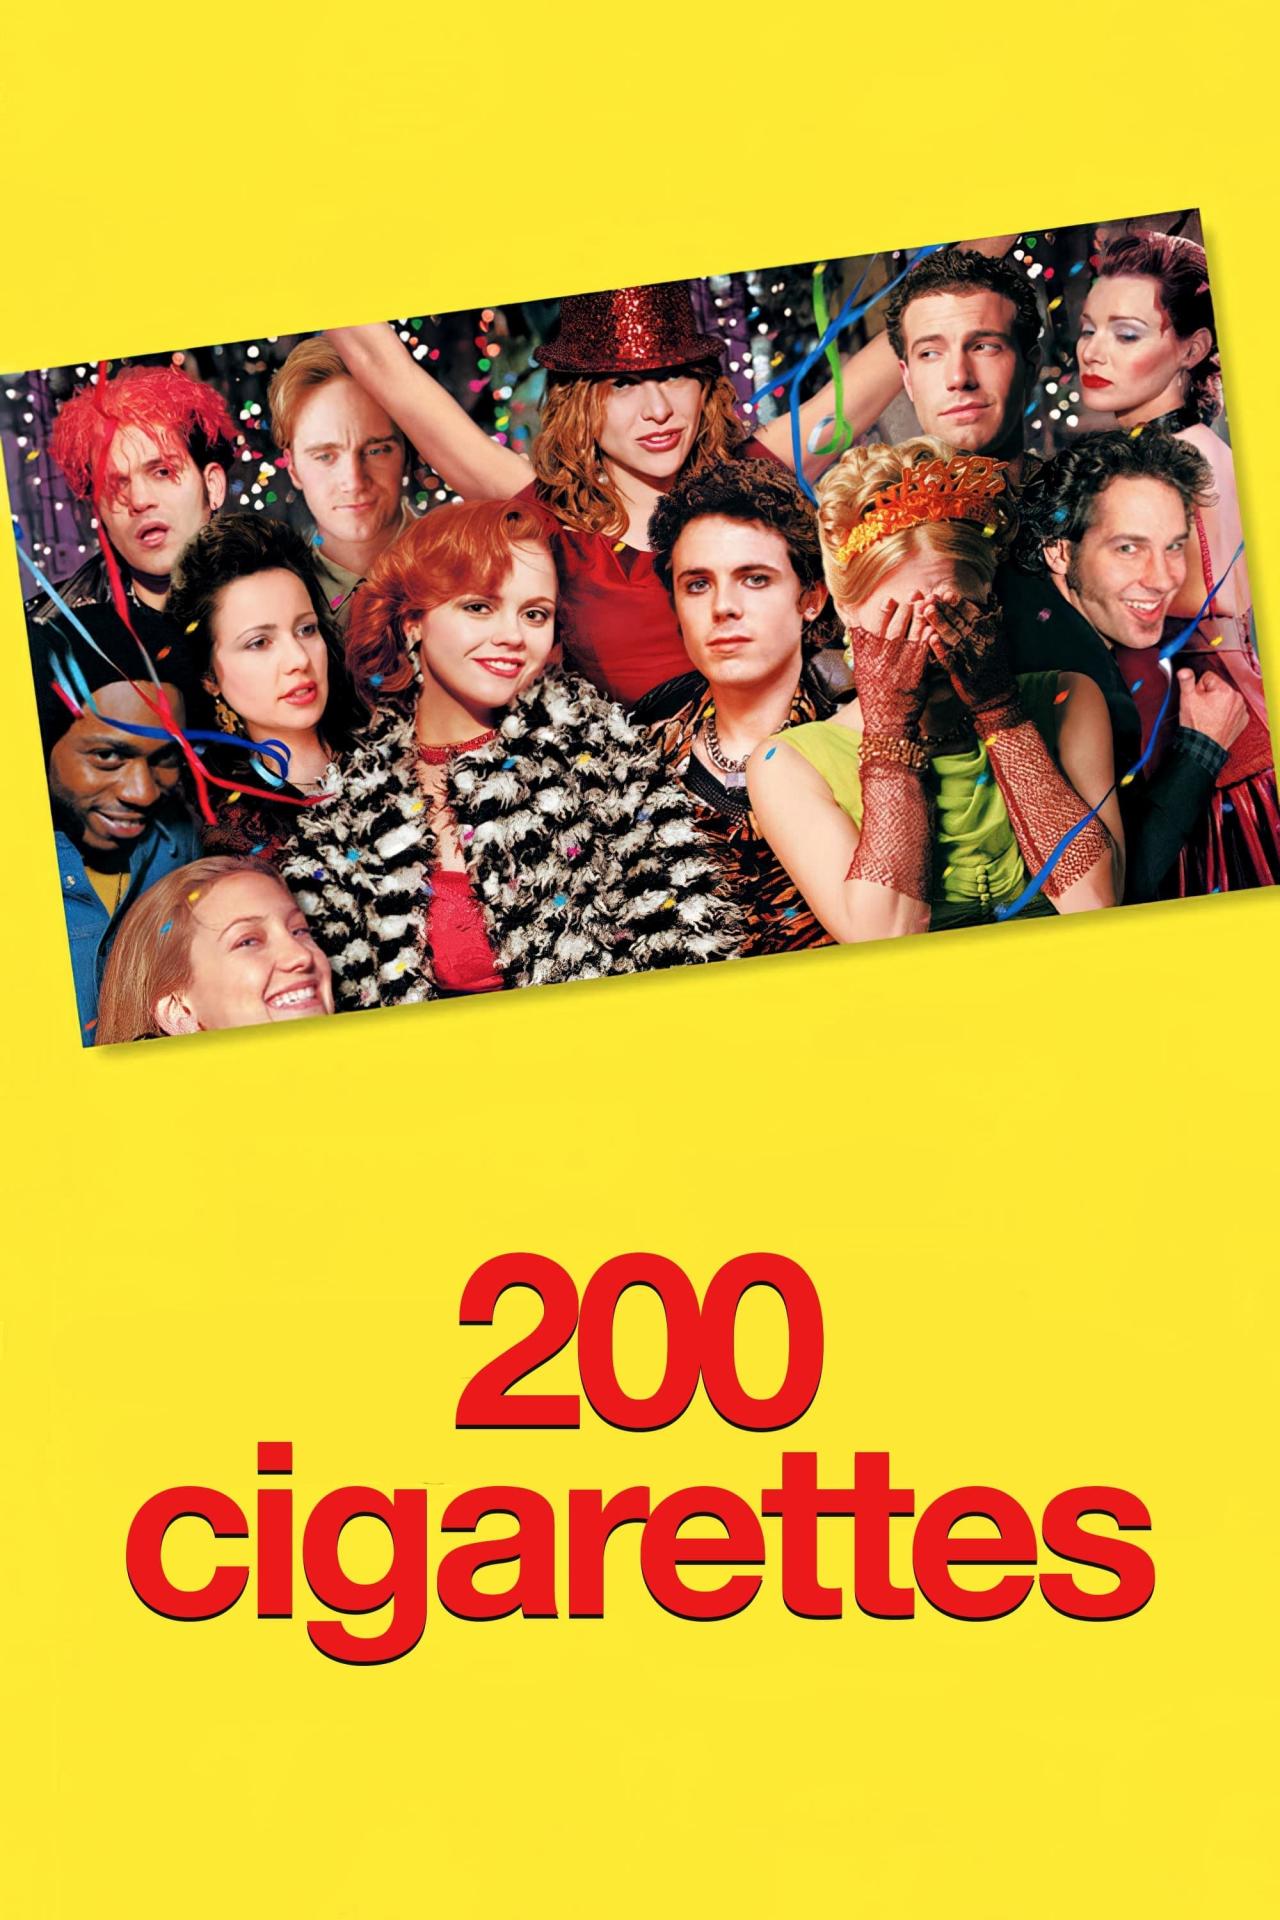 200 Cigarettes est-il disponible sur Netflix ou autre ?